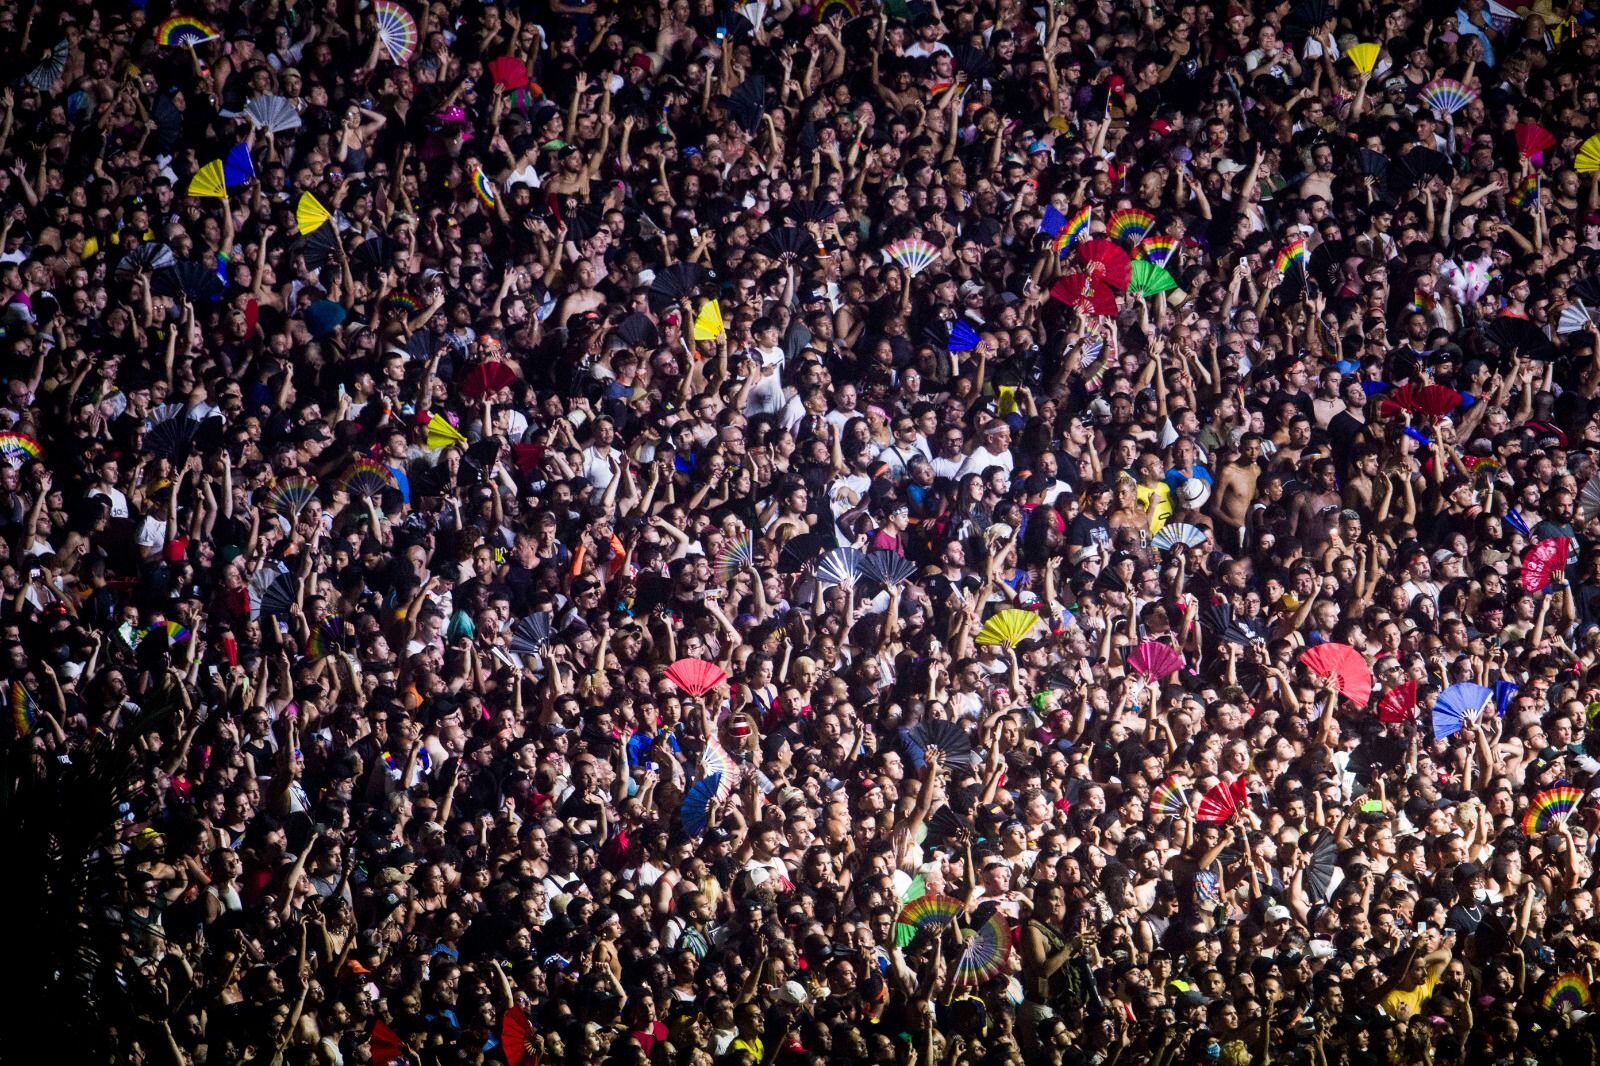 El histórico concierto de Madonna en Copacabana, Brasil.